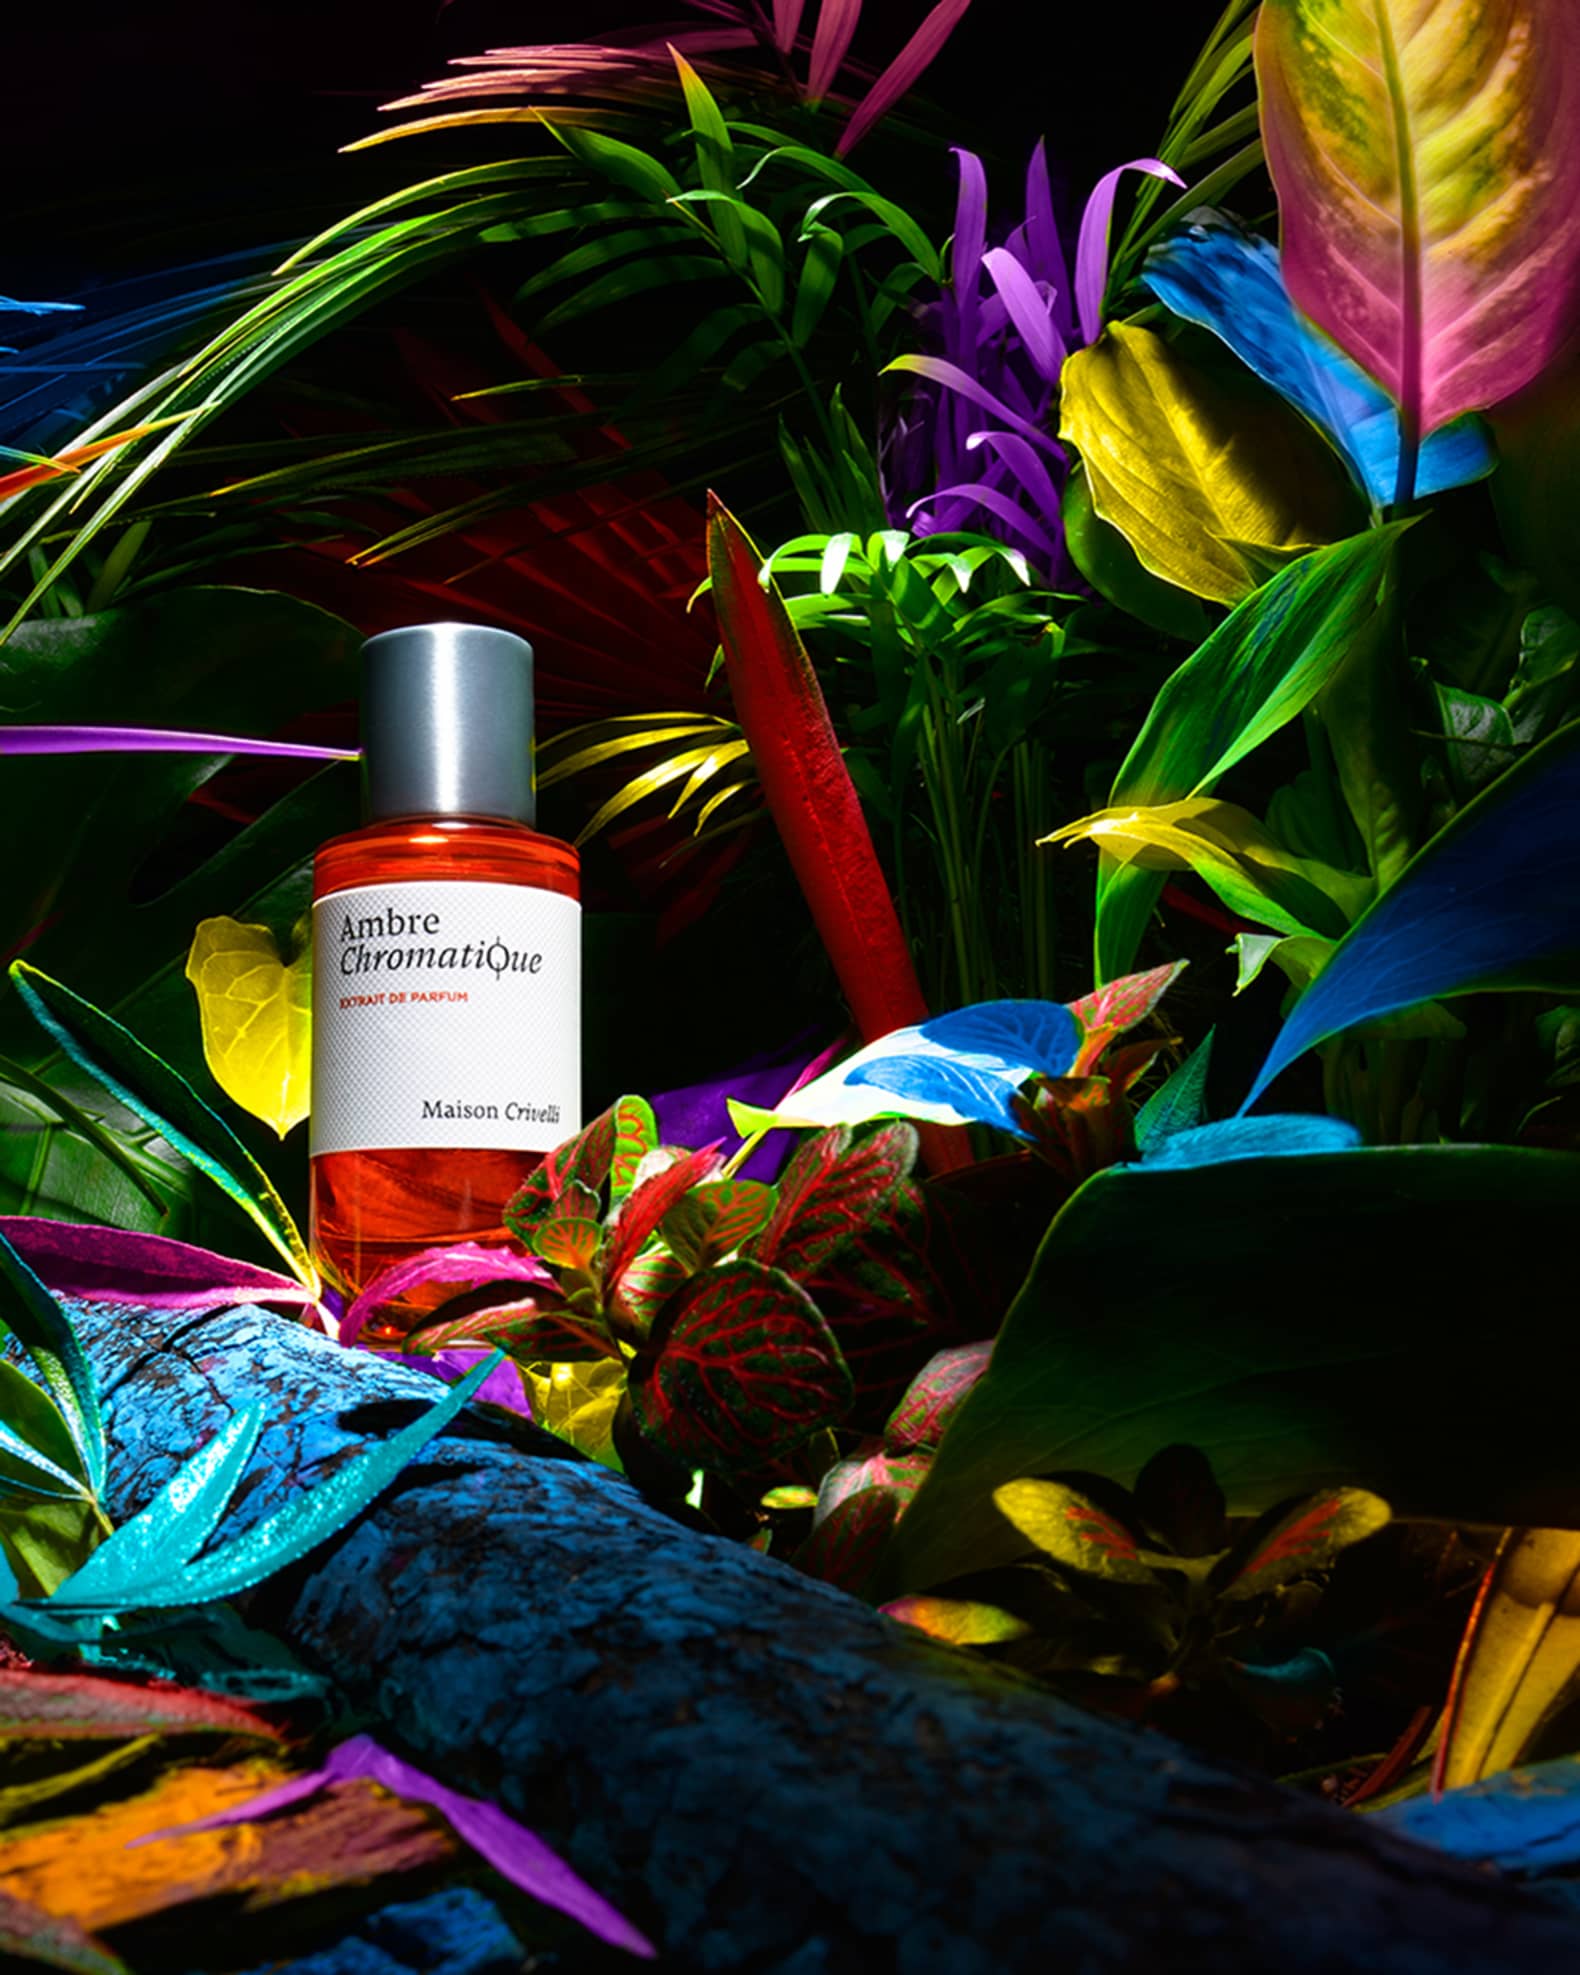 Maison Crivelli 1.7 oz. Ambre Chromatique Extrait de Parfum | Neiman Marcus